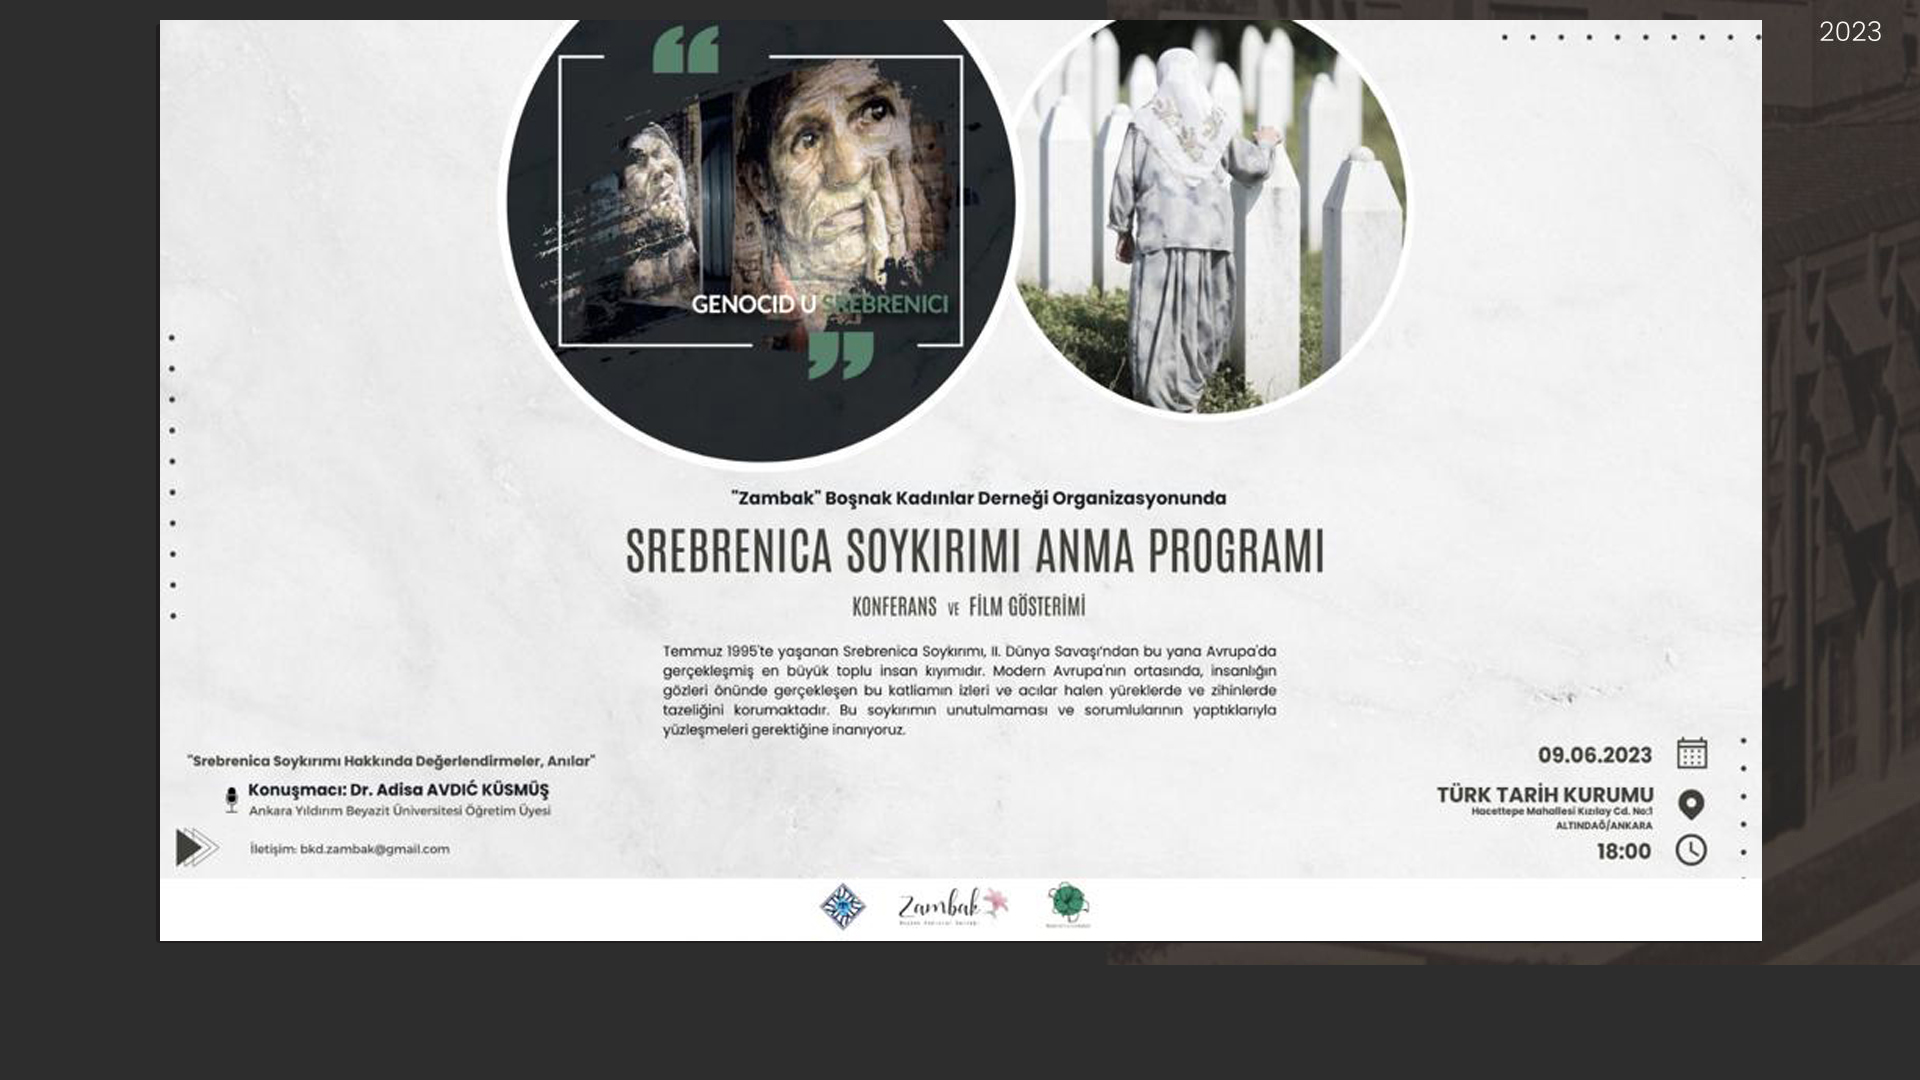  Srebrenica Soykırımı Anma Programı Düzenlenecektir